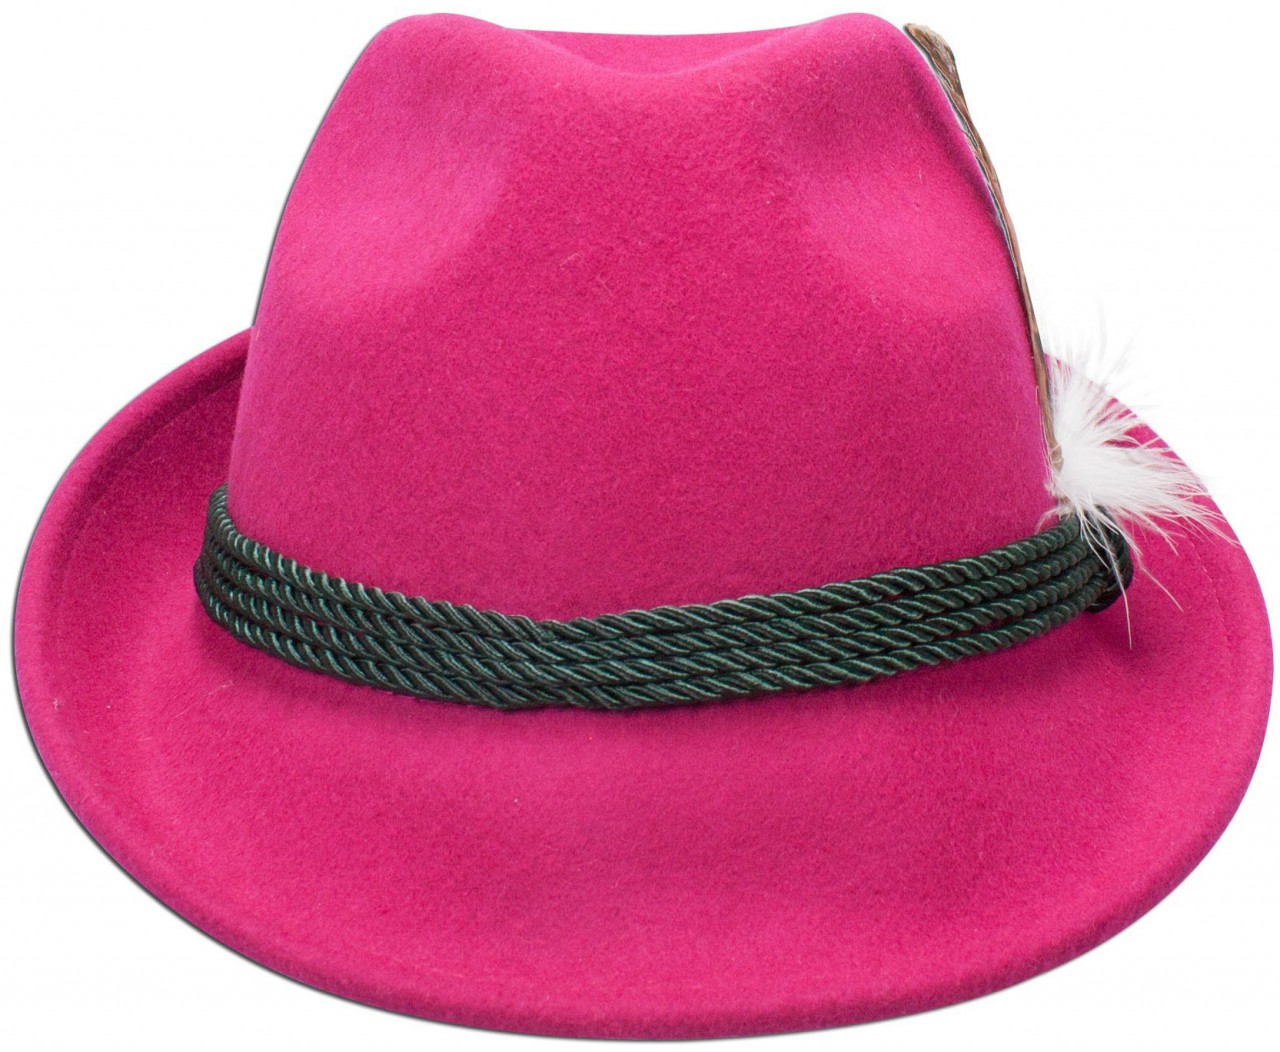 Podgląd: Tradycyjny filcowy kapelusz z różowym piórkiem